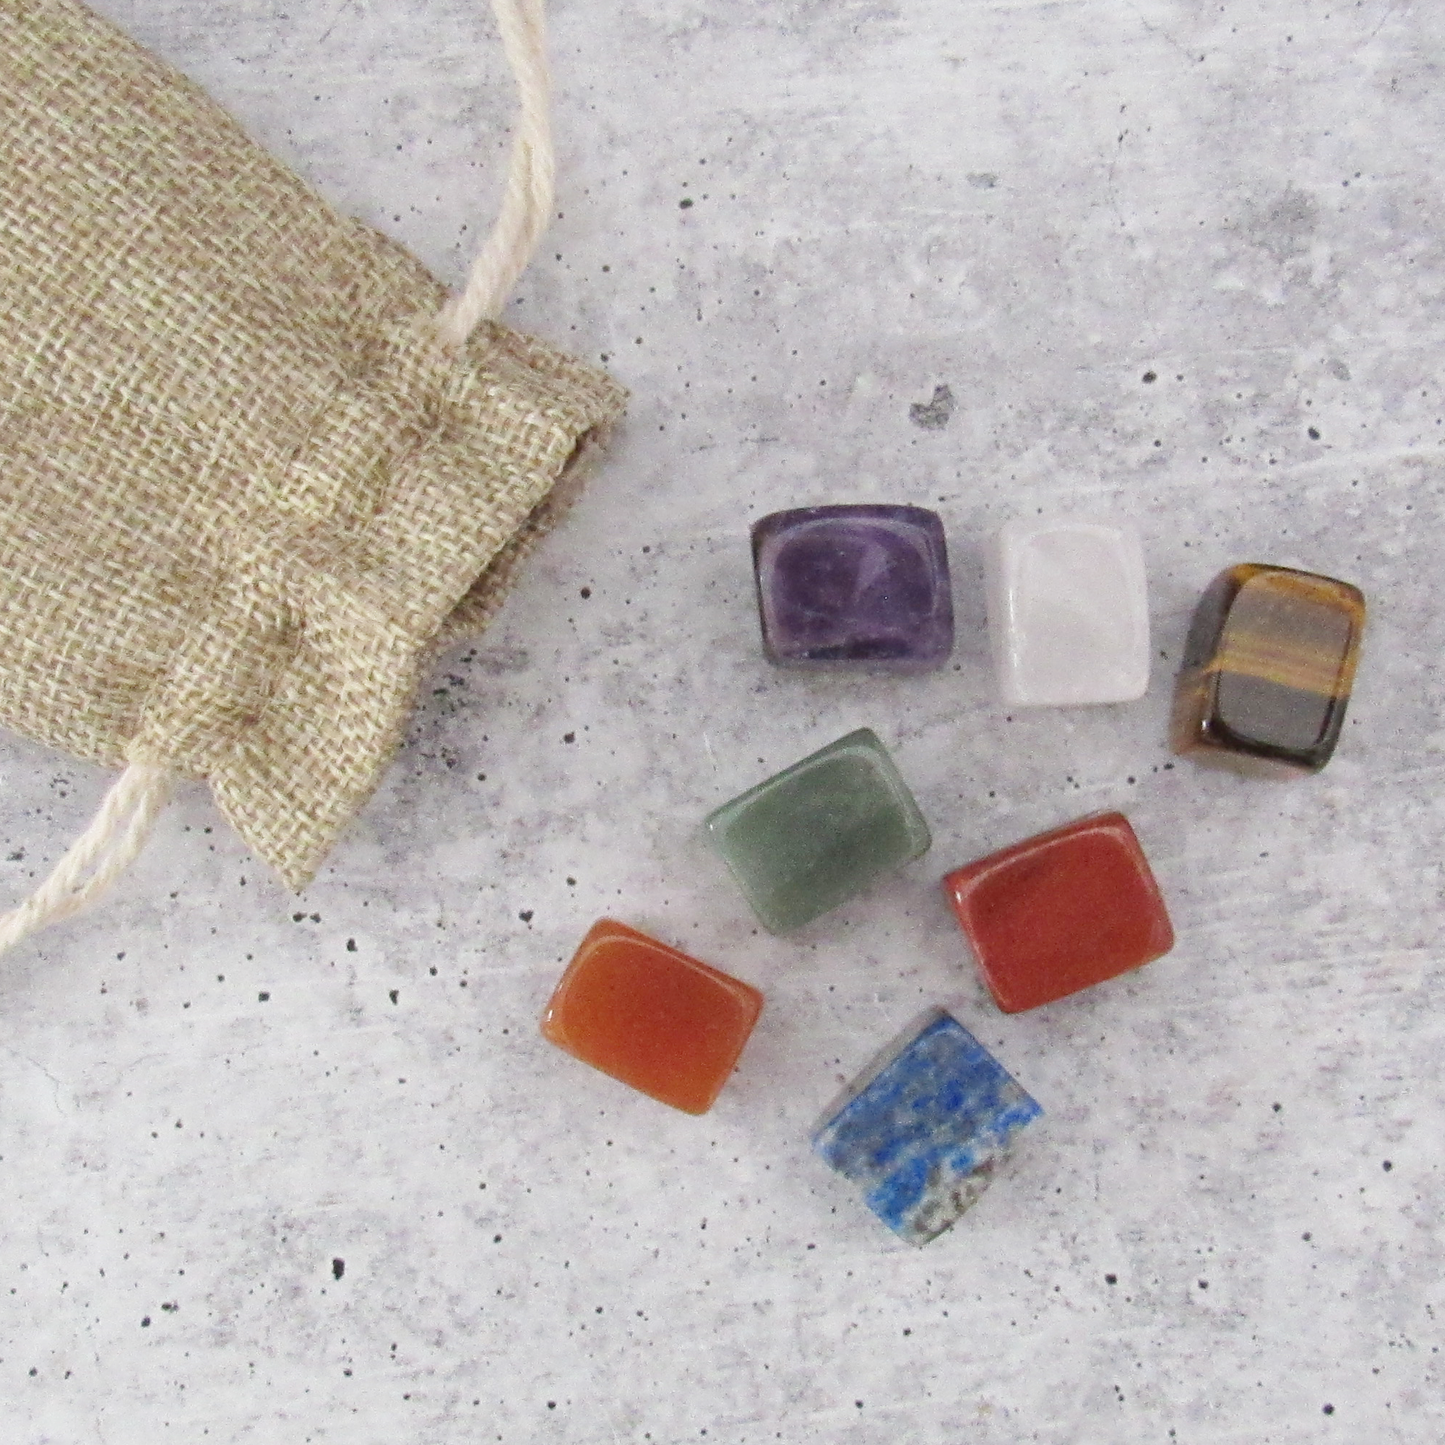 Mini Chakra Stone Set with Burlap Bag